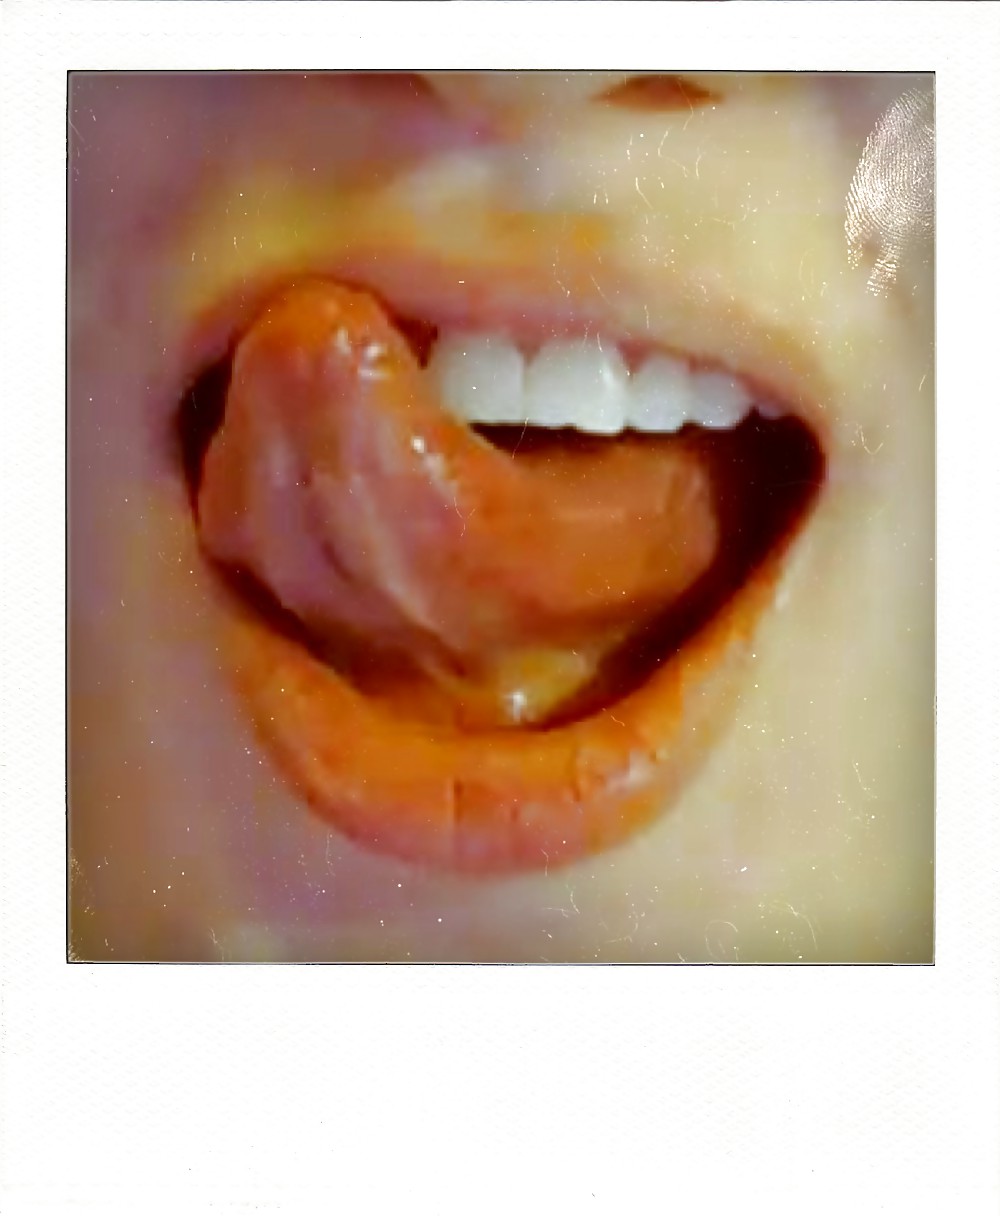 Ihr Sexy Mund, Lippen Und Zunge ... #16994235